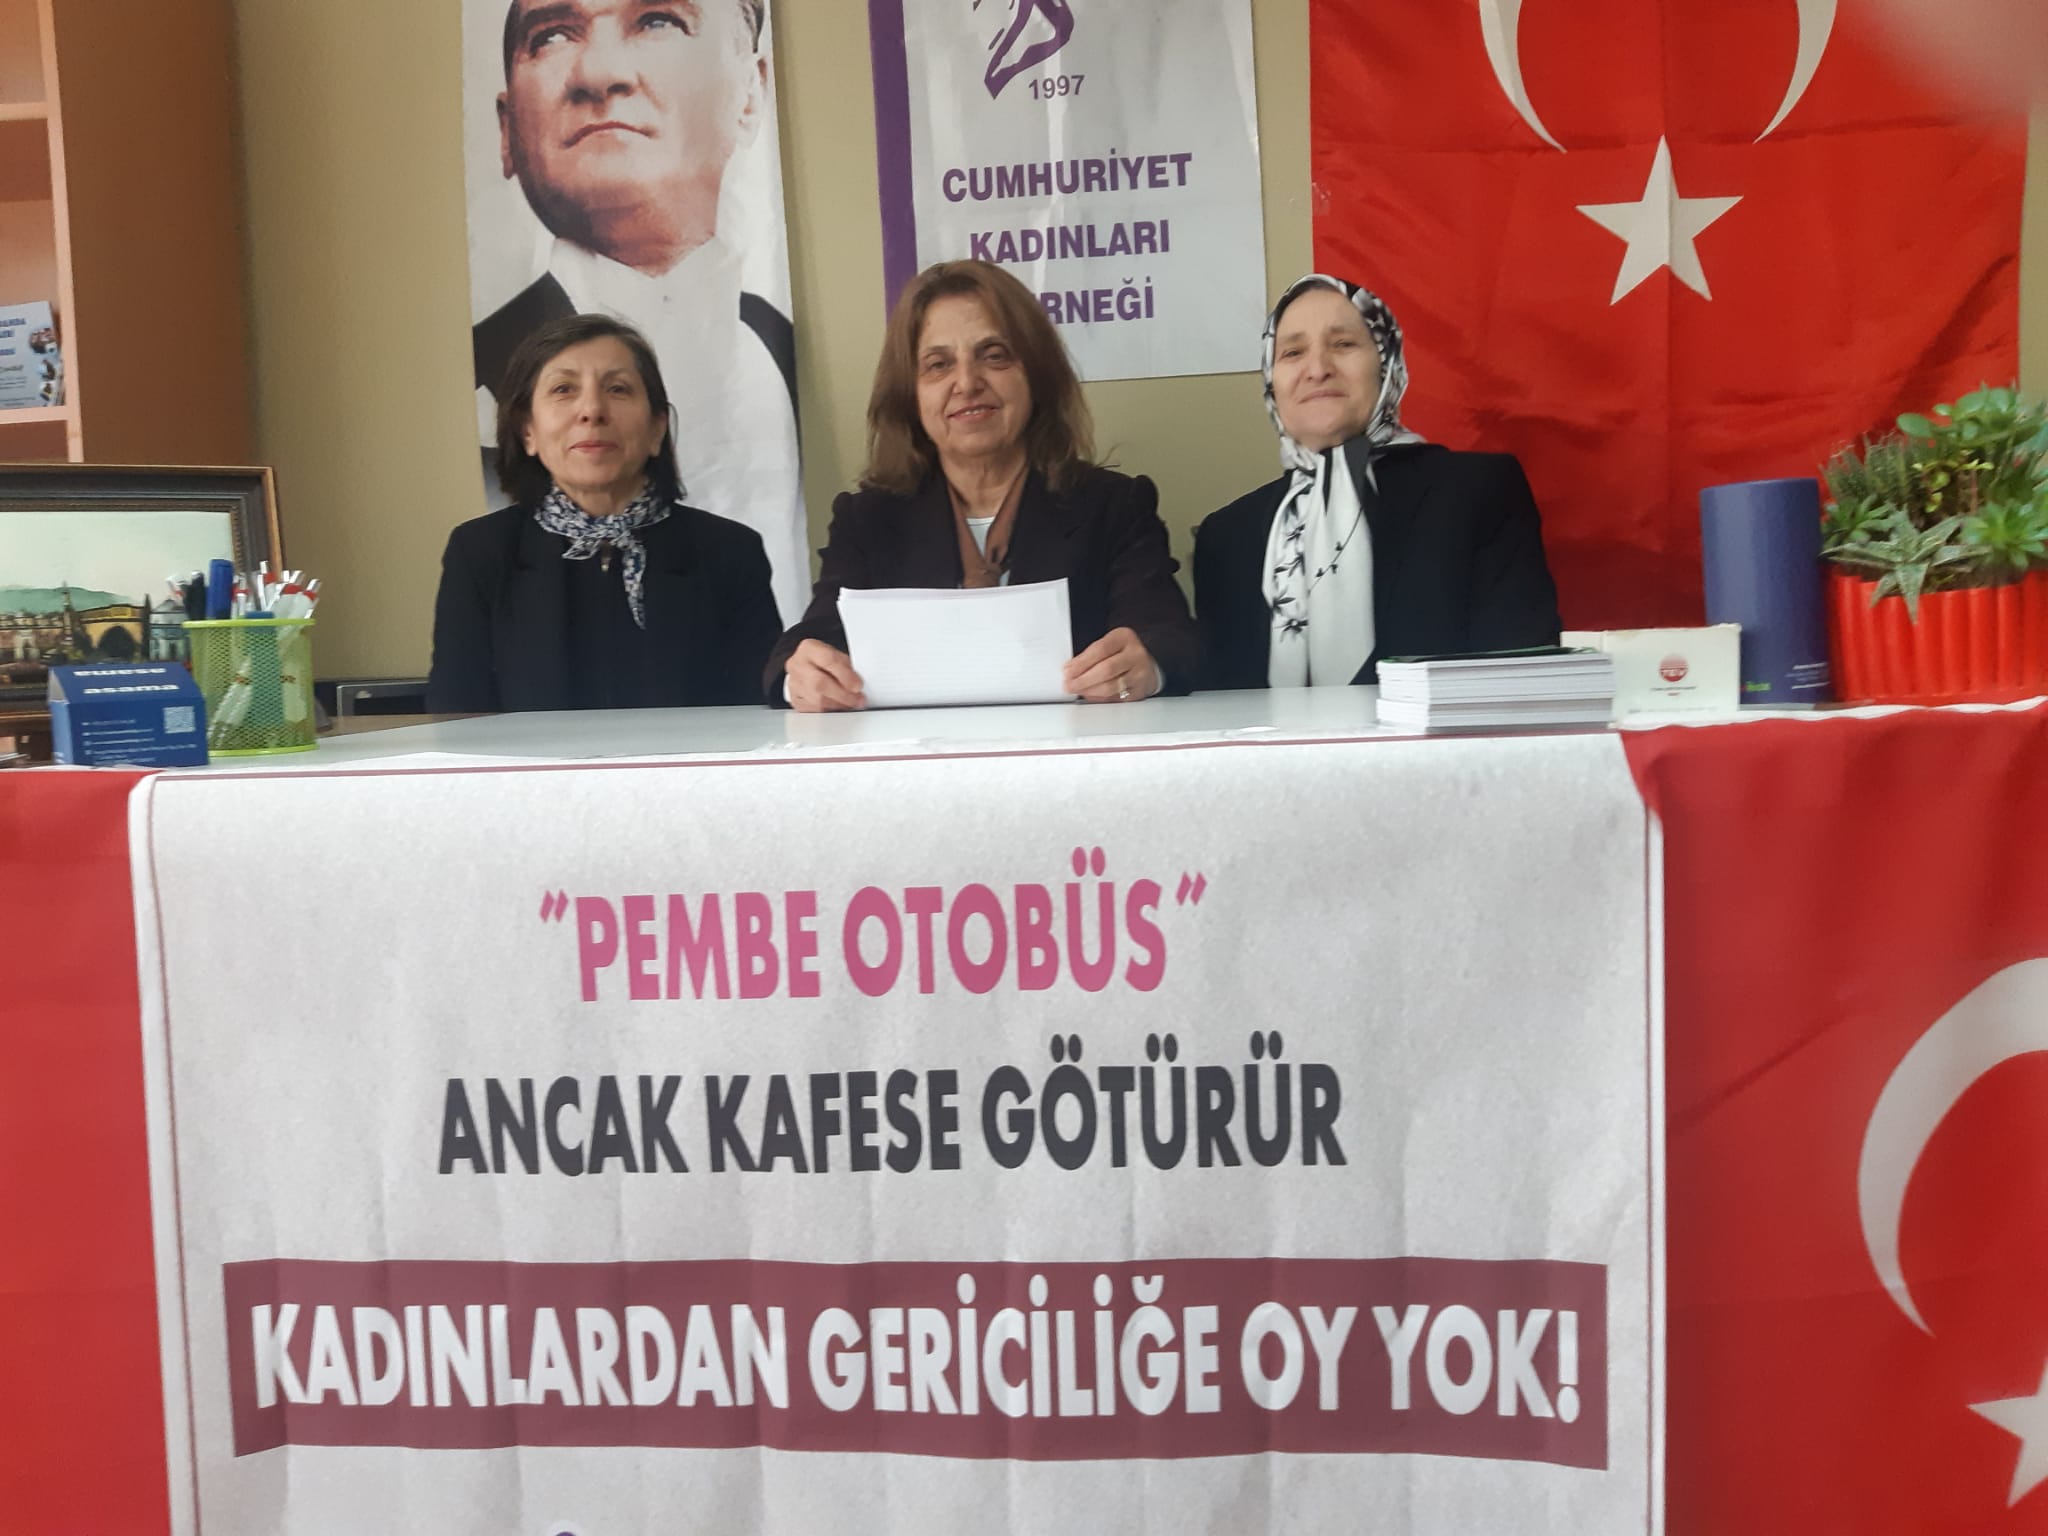 Cumhuriyet Kadınları Derneği Osmangazi Şubesi; Pembe otobüs anca kafese götürür